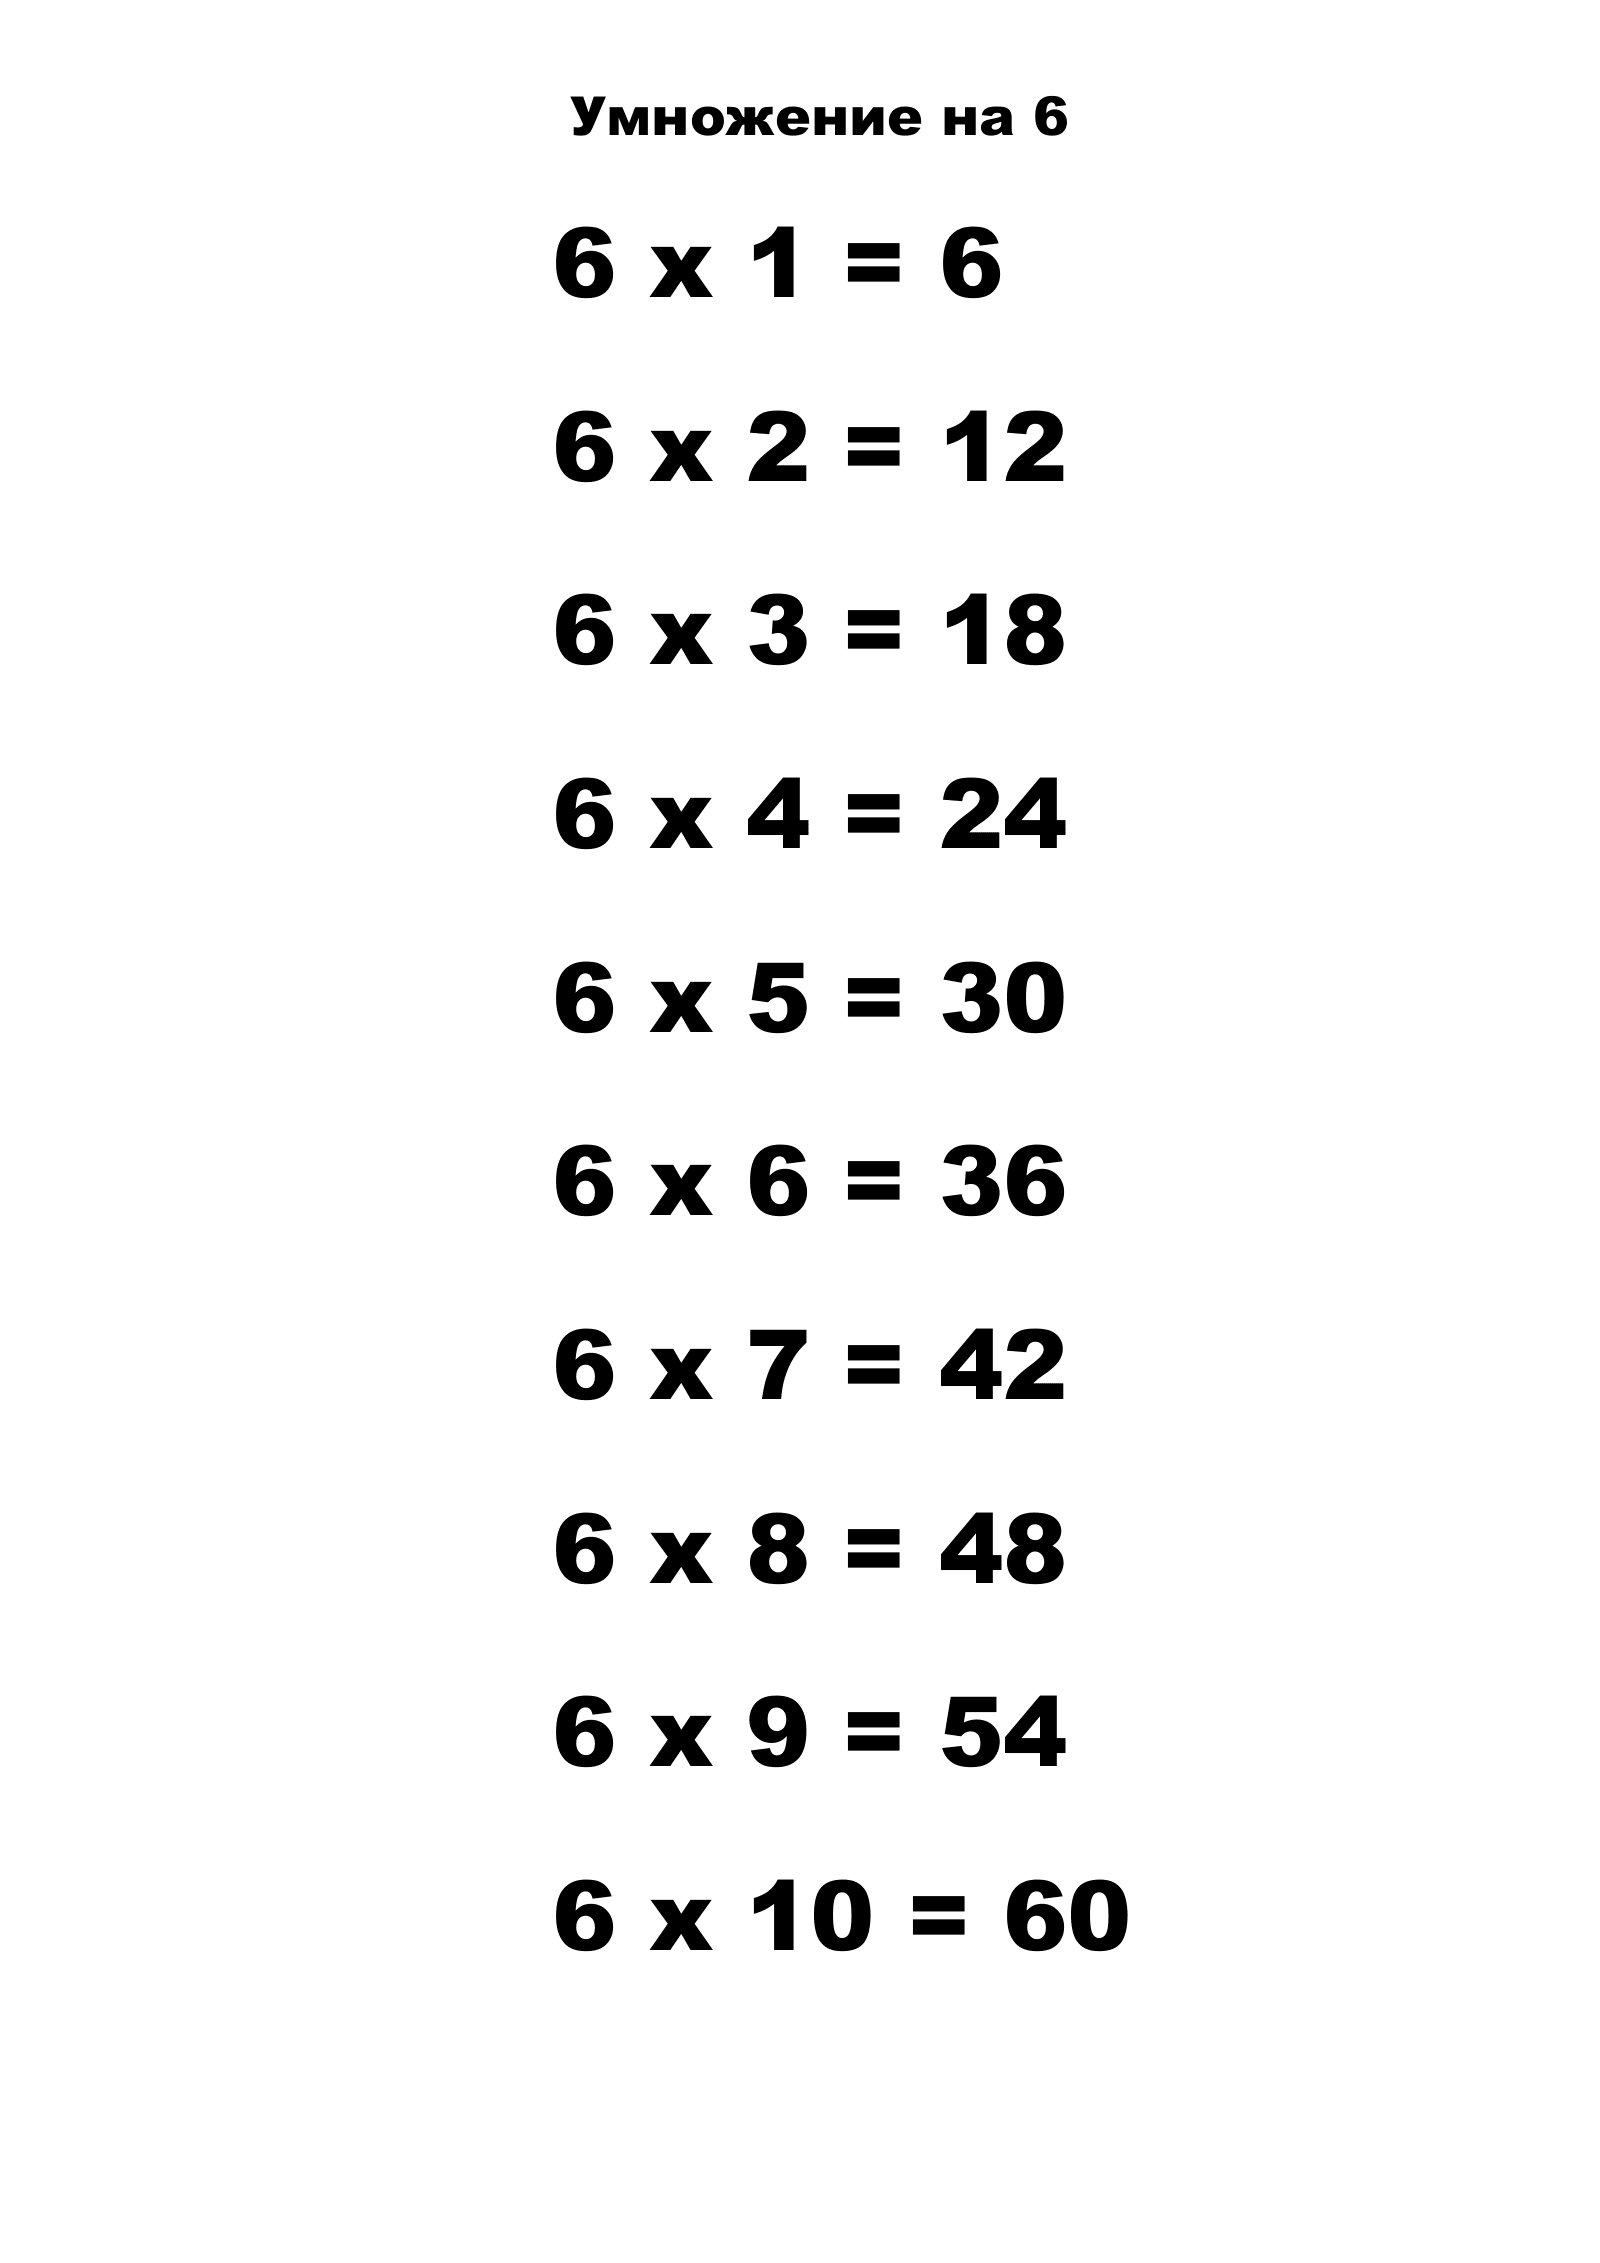 Таблица умножения на 6. Распечатать